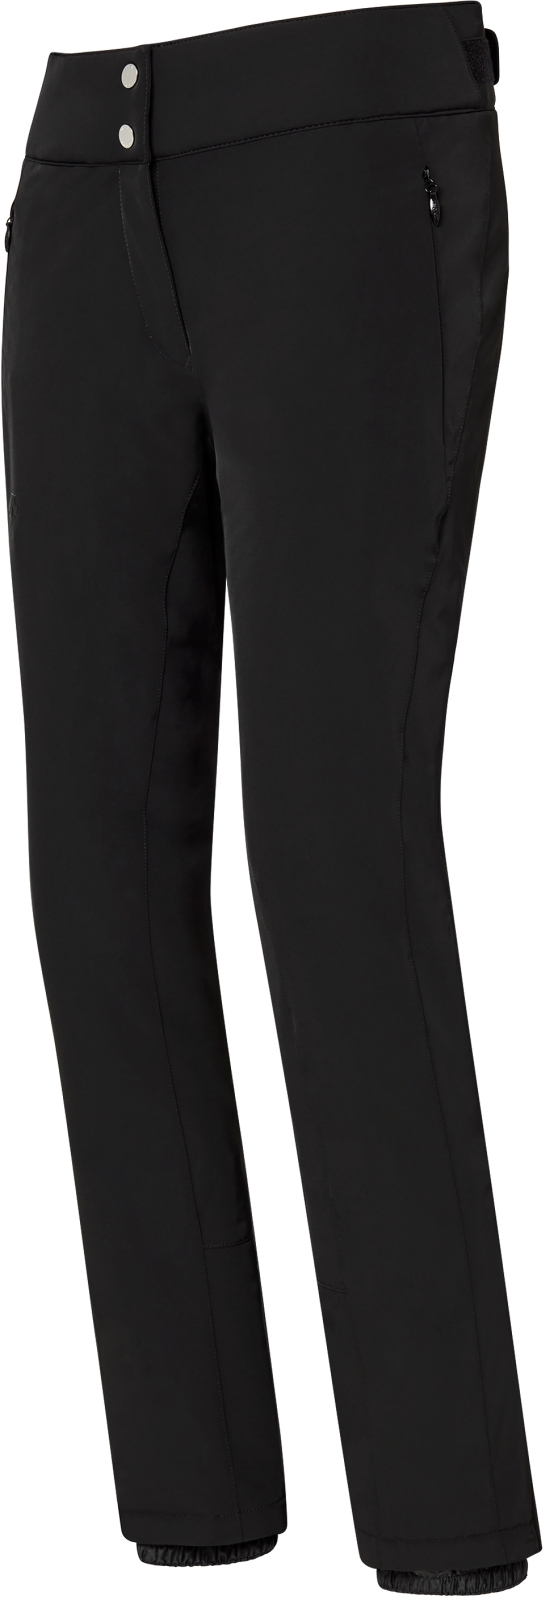 E-shop Descente Dámské lyžařské kalhoty Giselle Insulated Pants - Black S